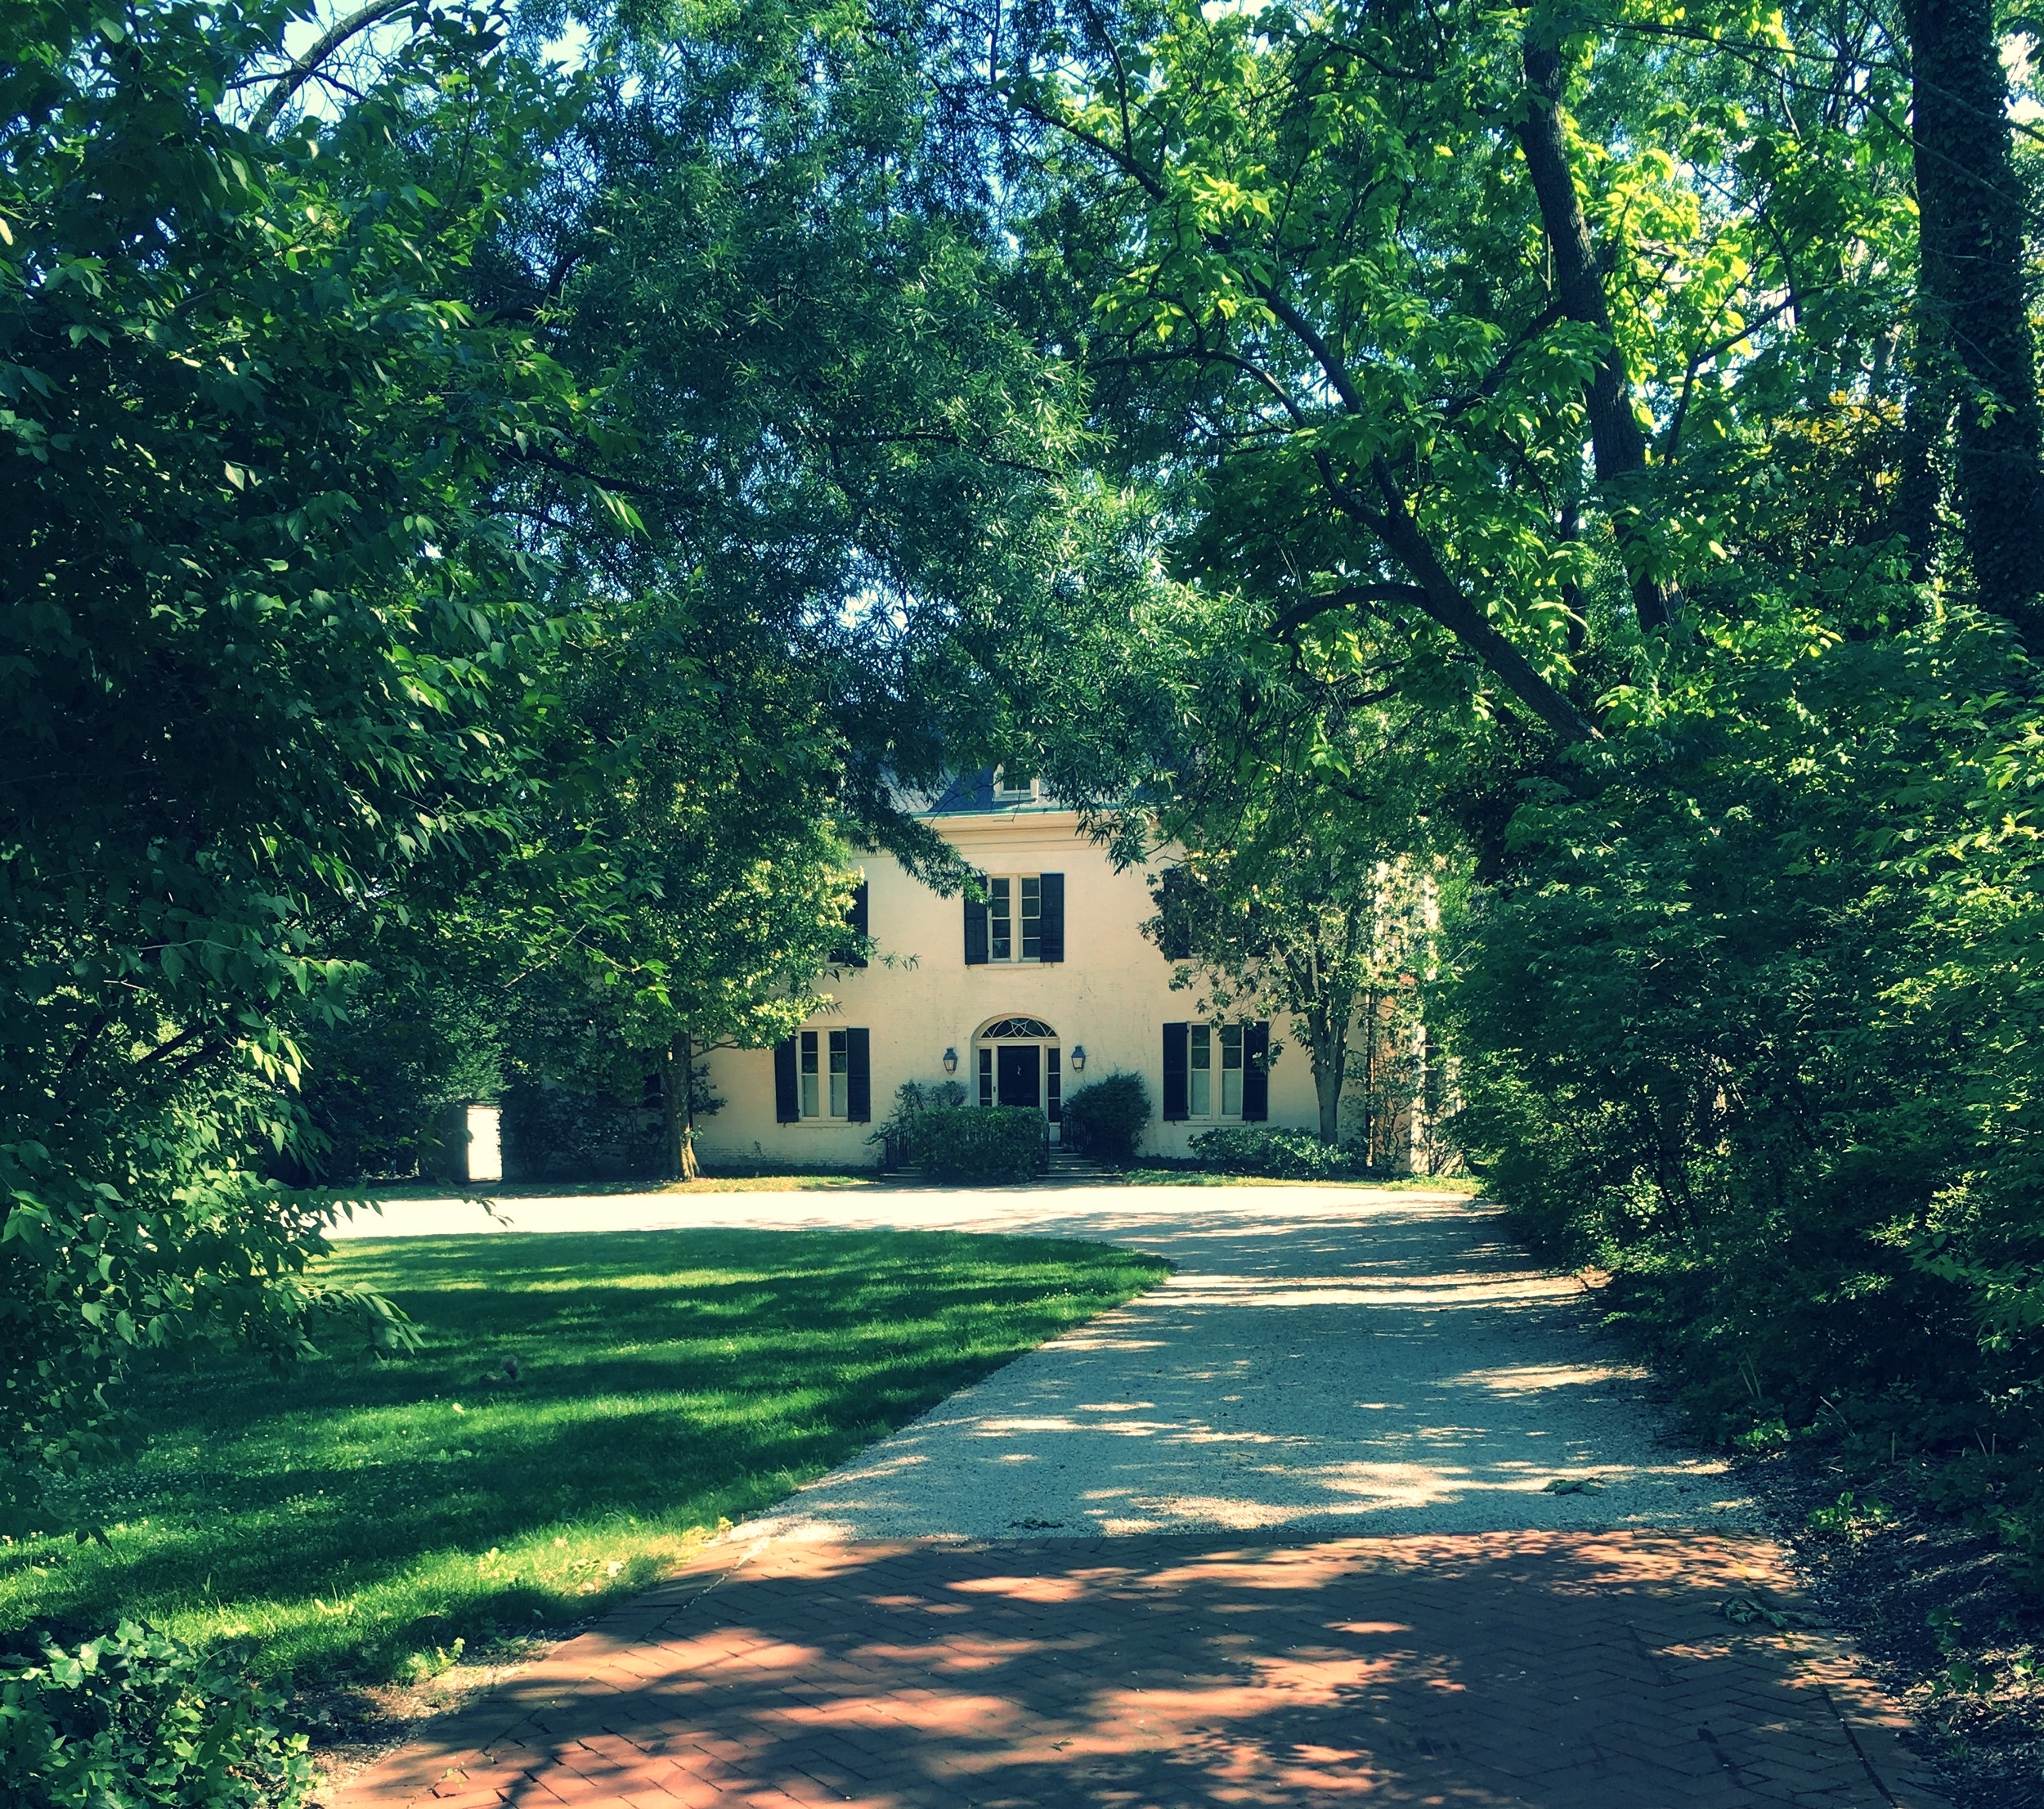 William "Wild Bill" Donovan's House in Georgetown